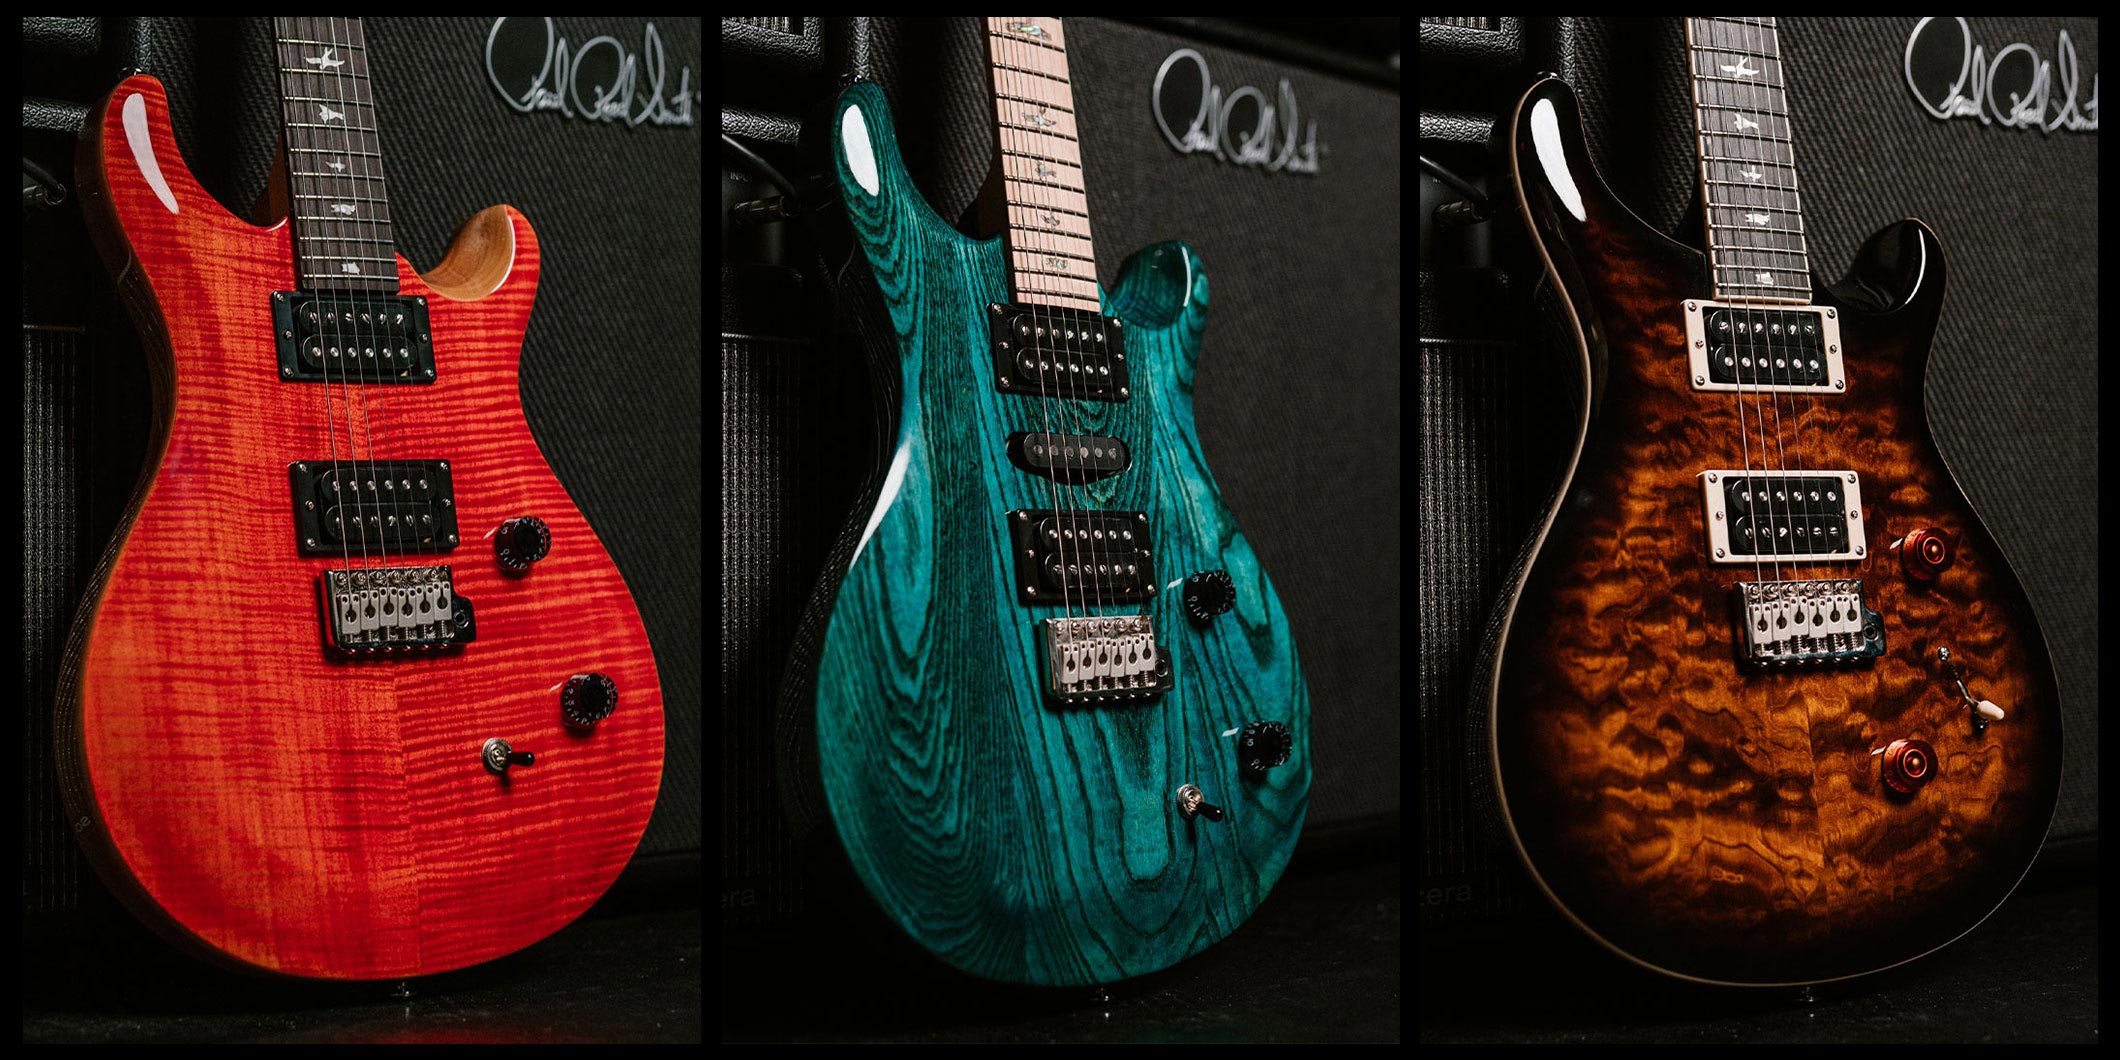 PRS GuitarsのSEシリーズより登場した3つのニュー・モデルを紹介